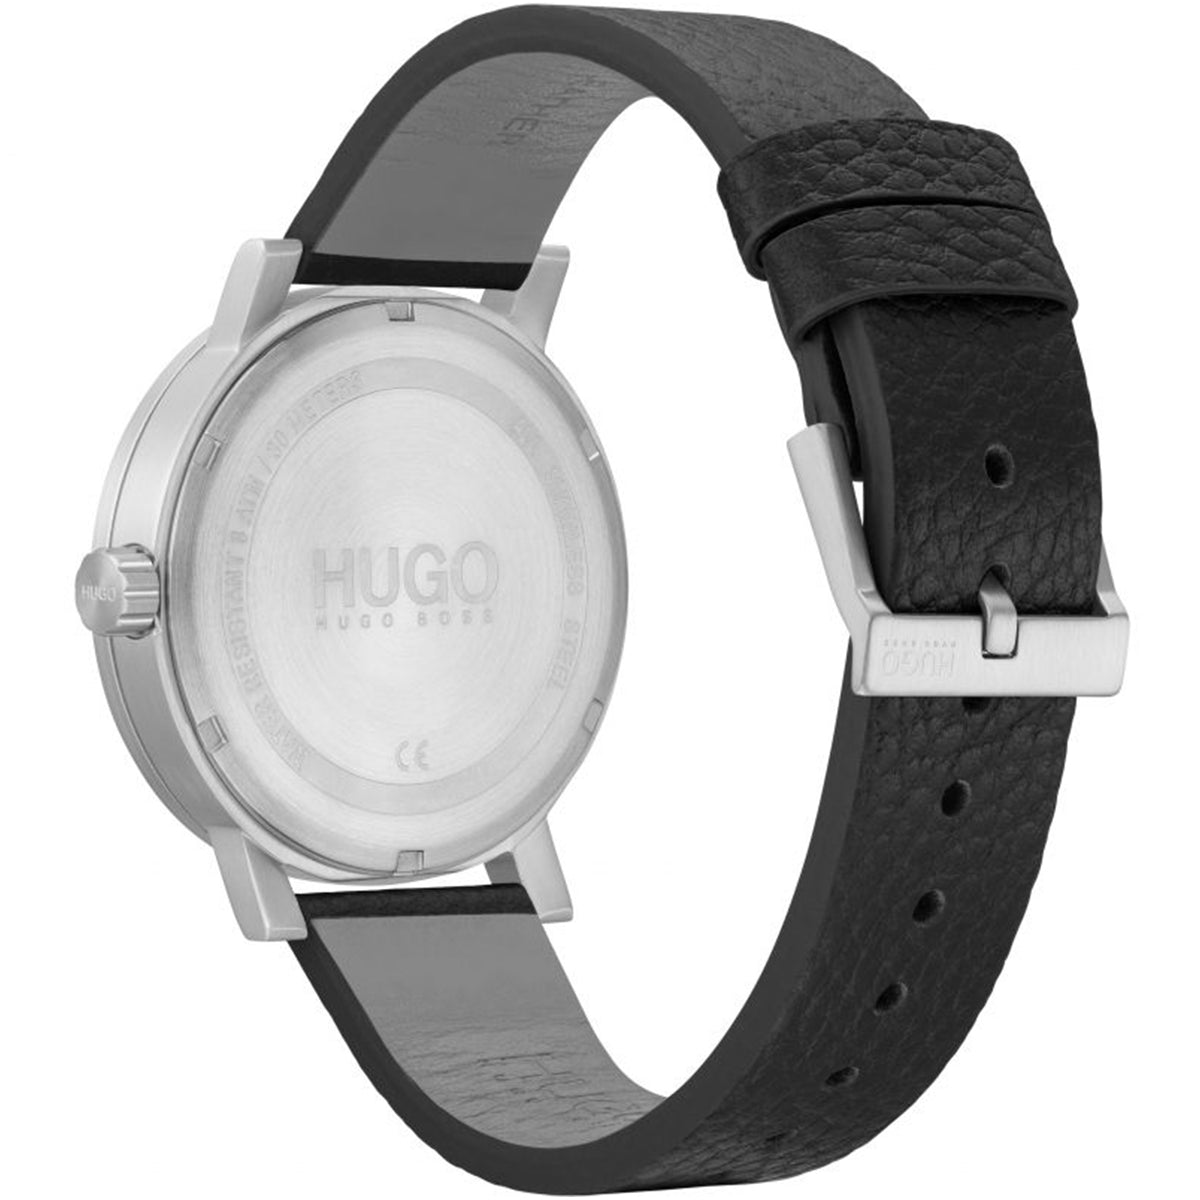 Hugo Boss - Rase - HB153.0115